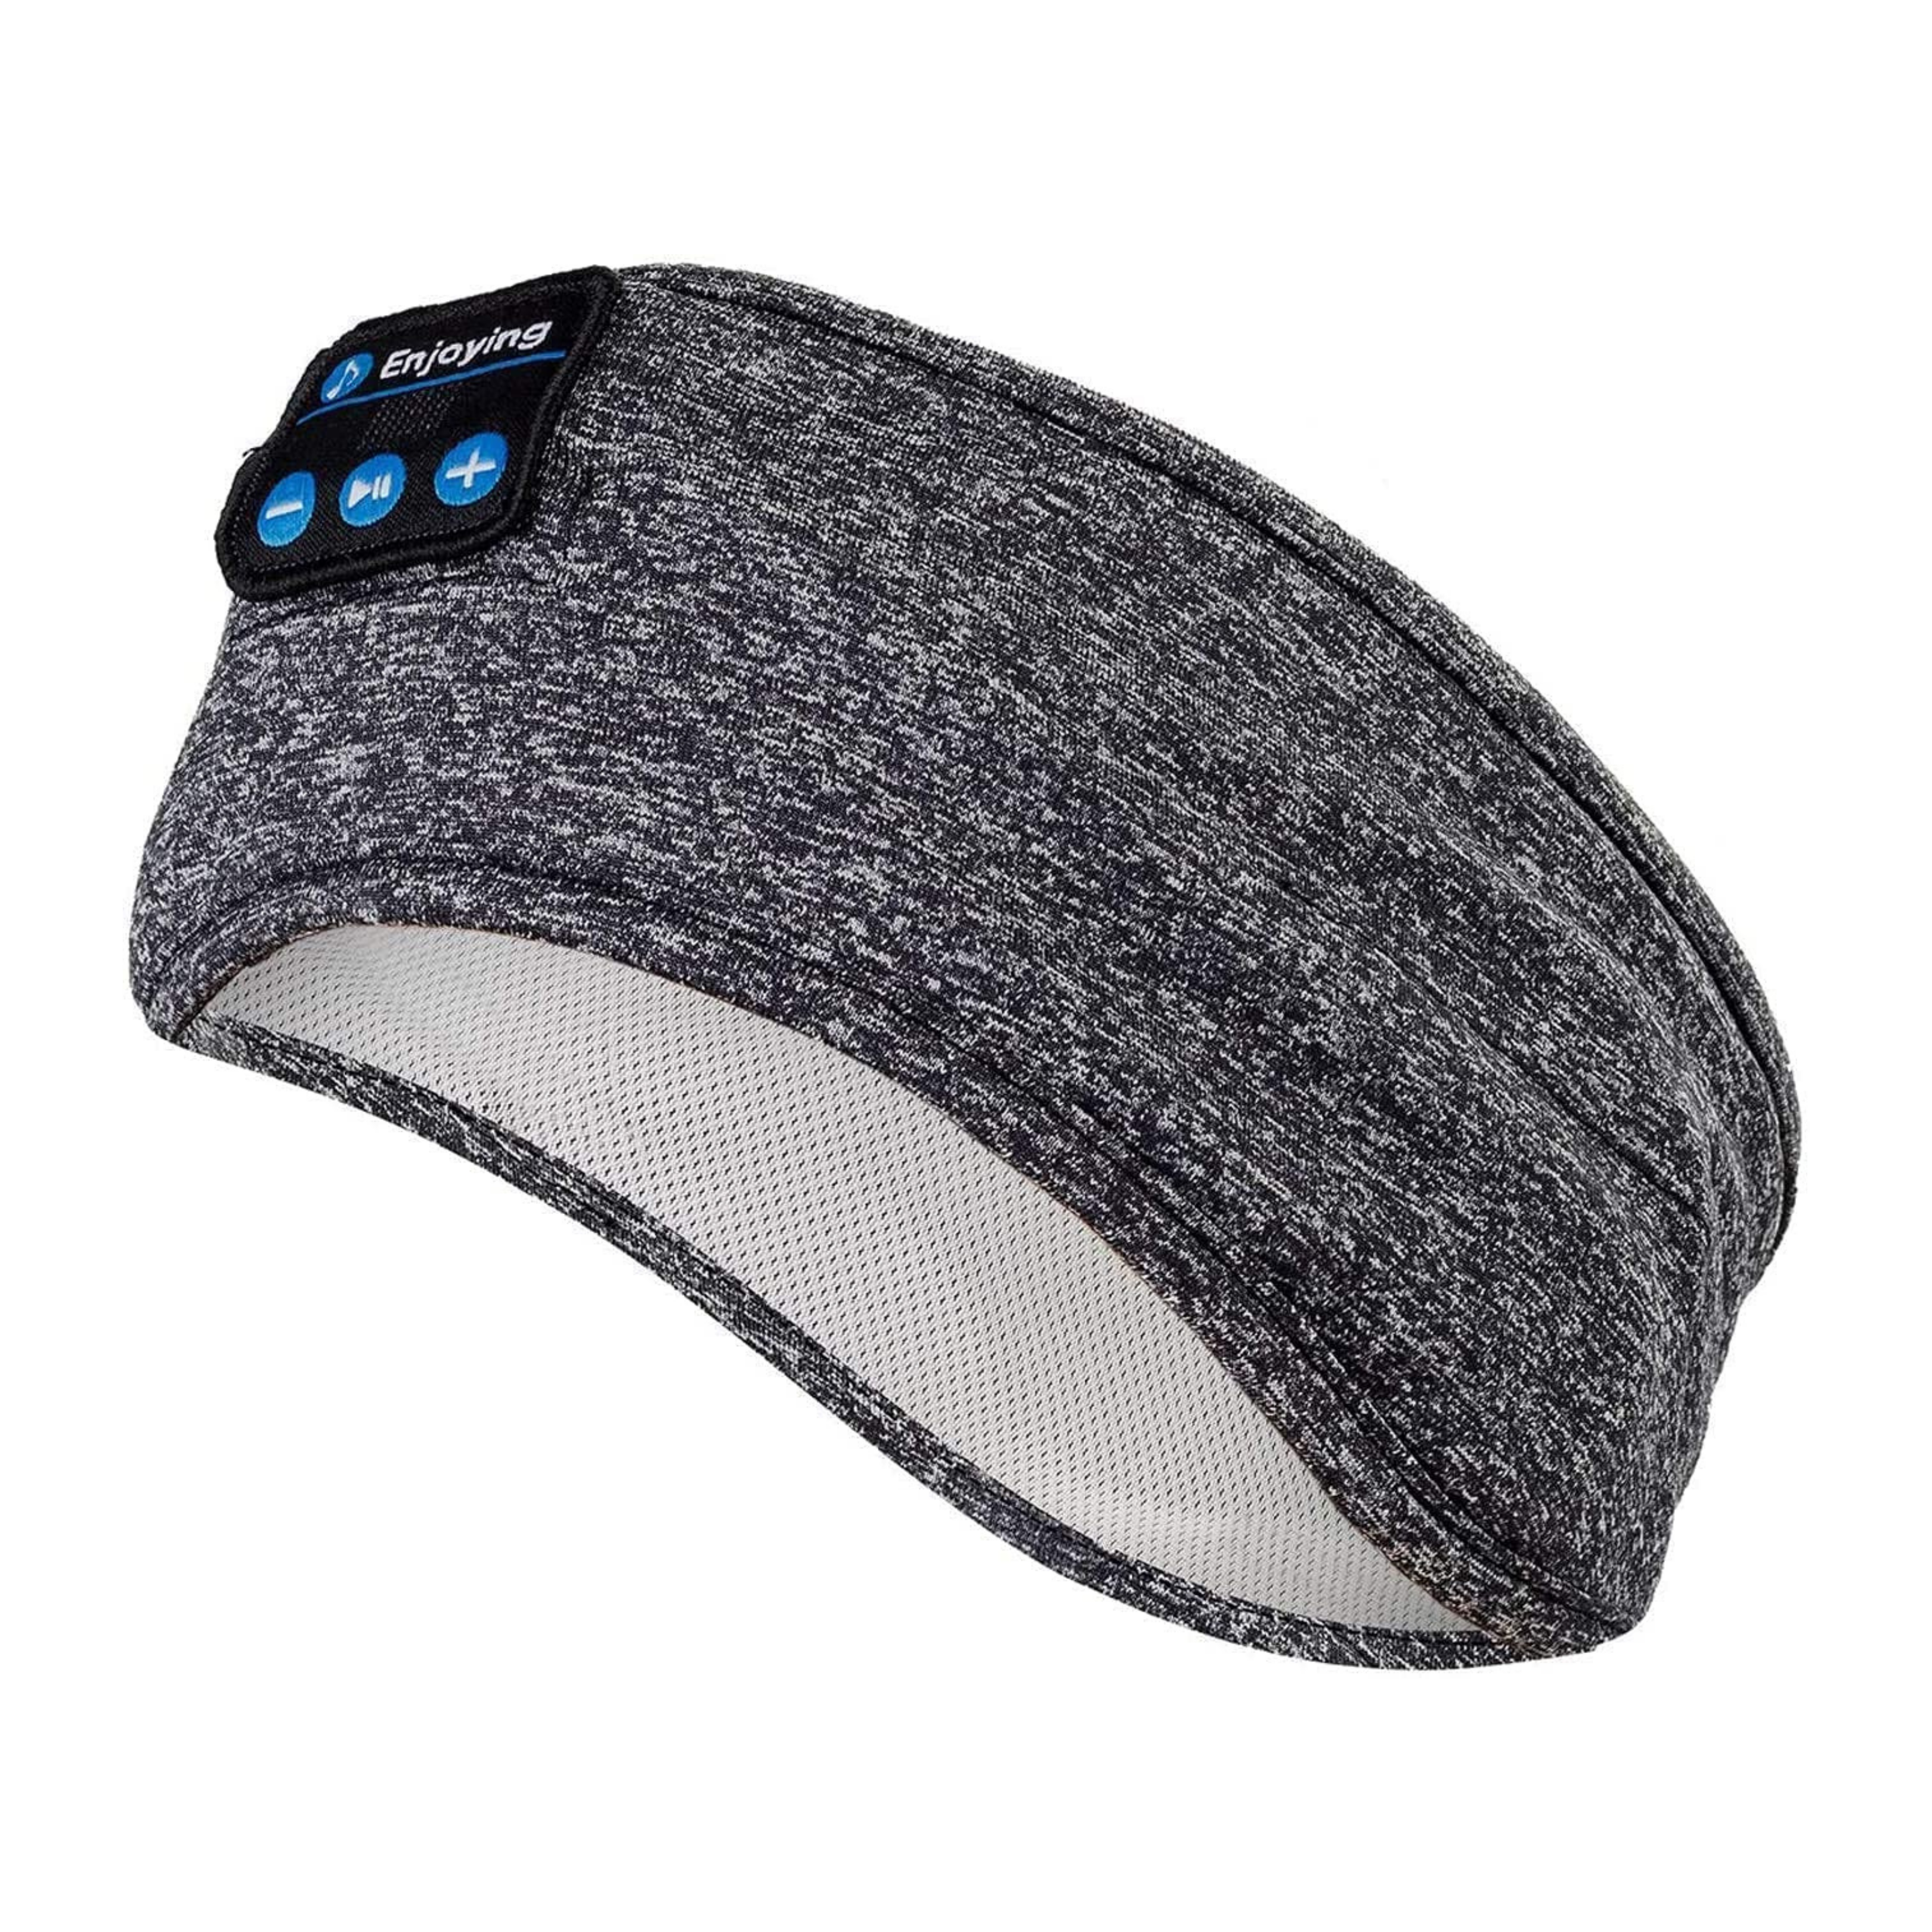 SleepSound™ UltraSoft Bluetooth Sleep Headphones